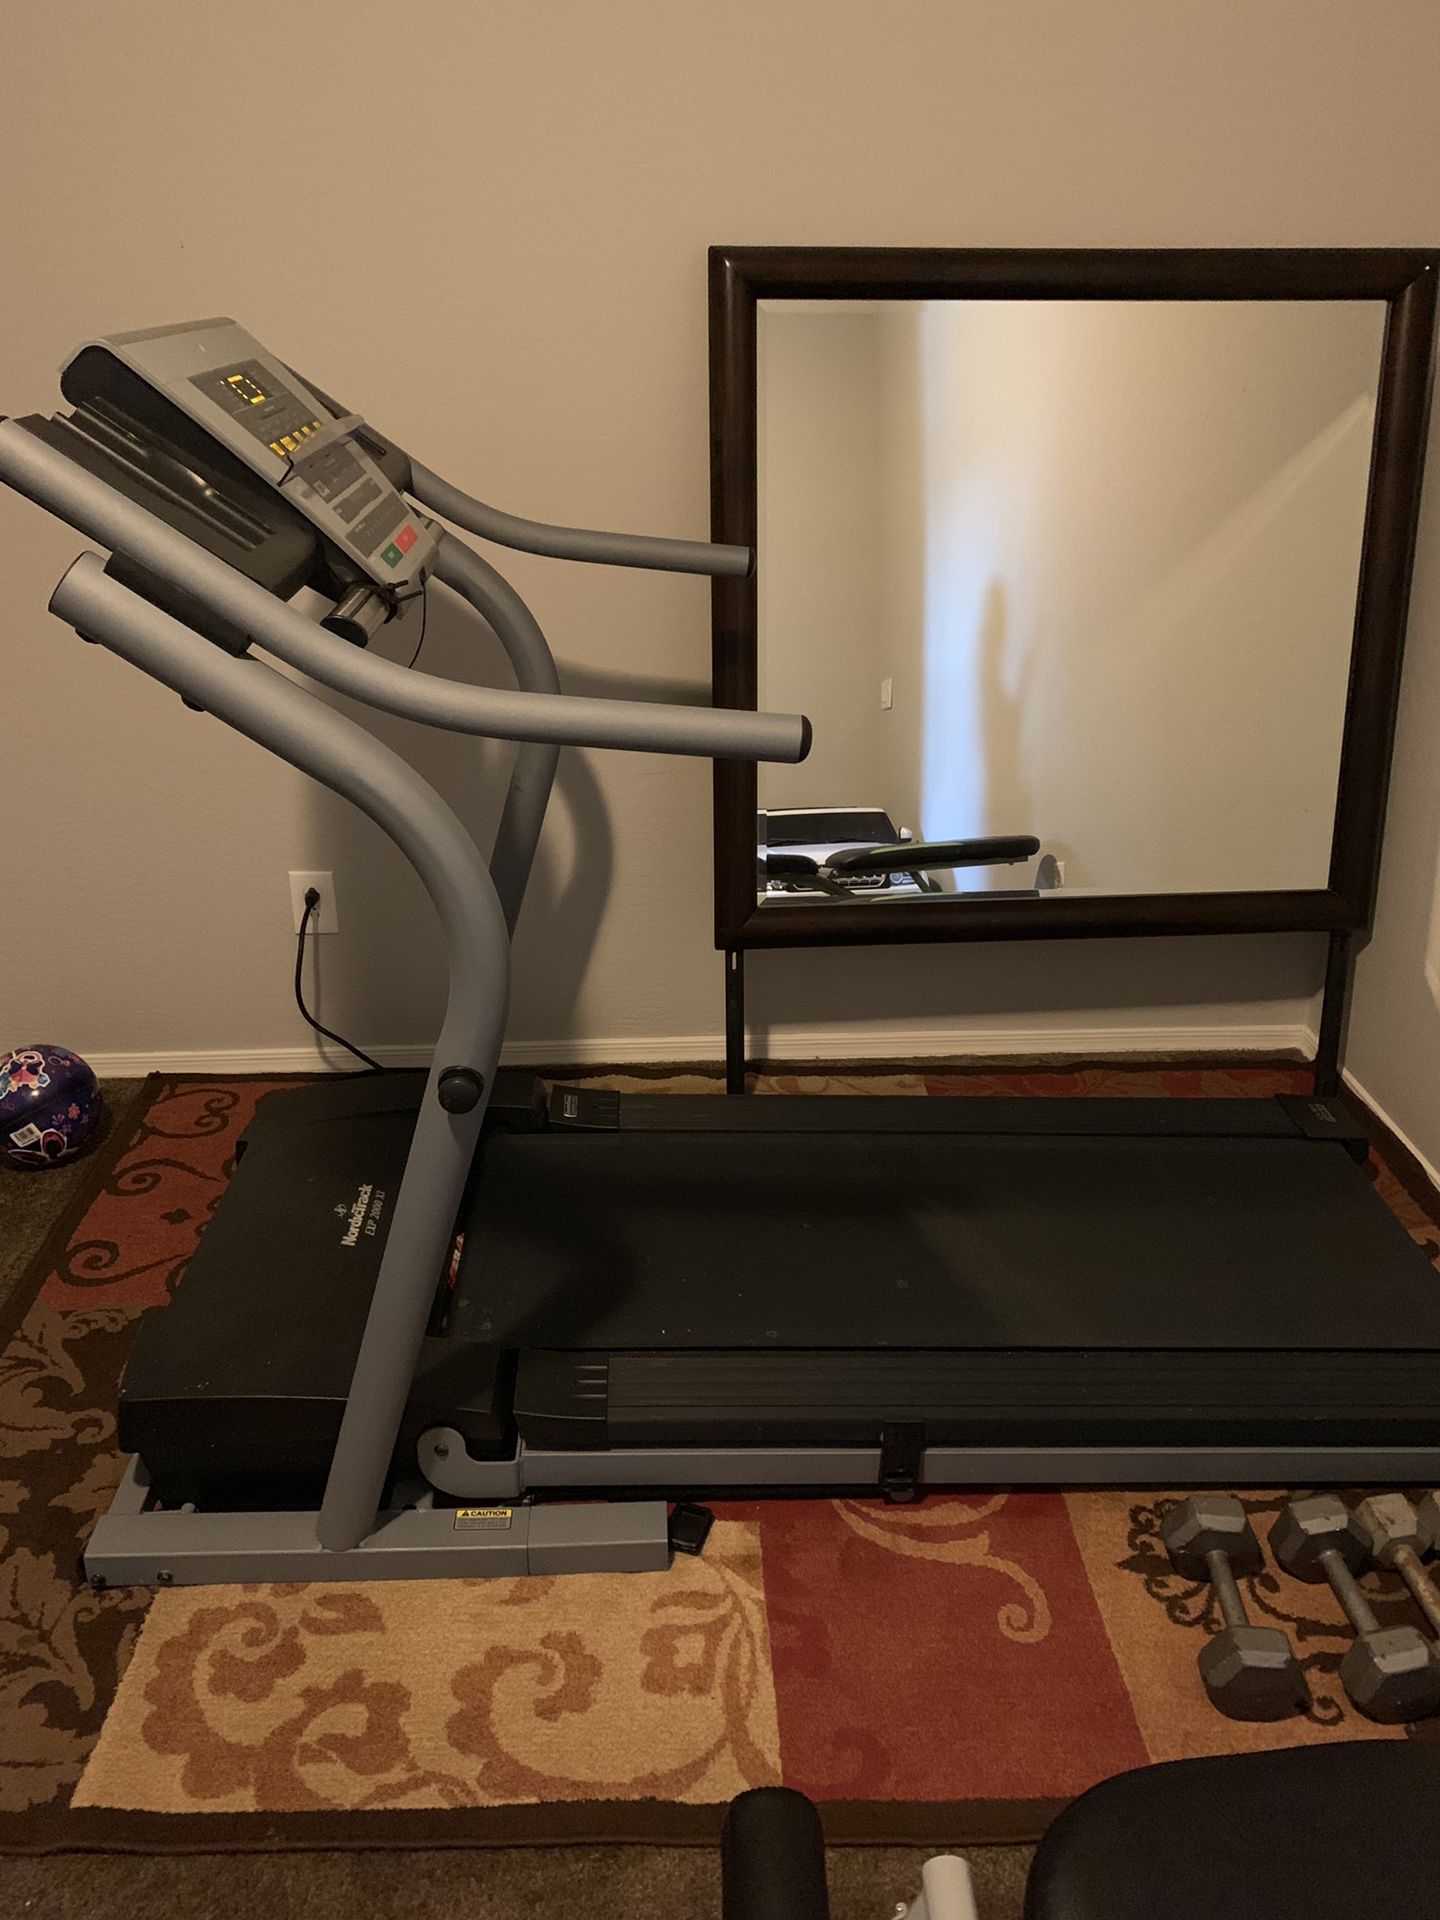 Treadmill NordicTrack Exp 2000 XL